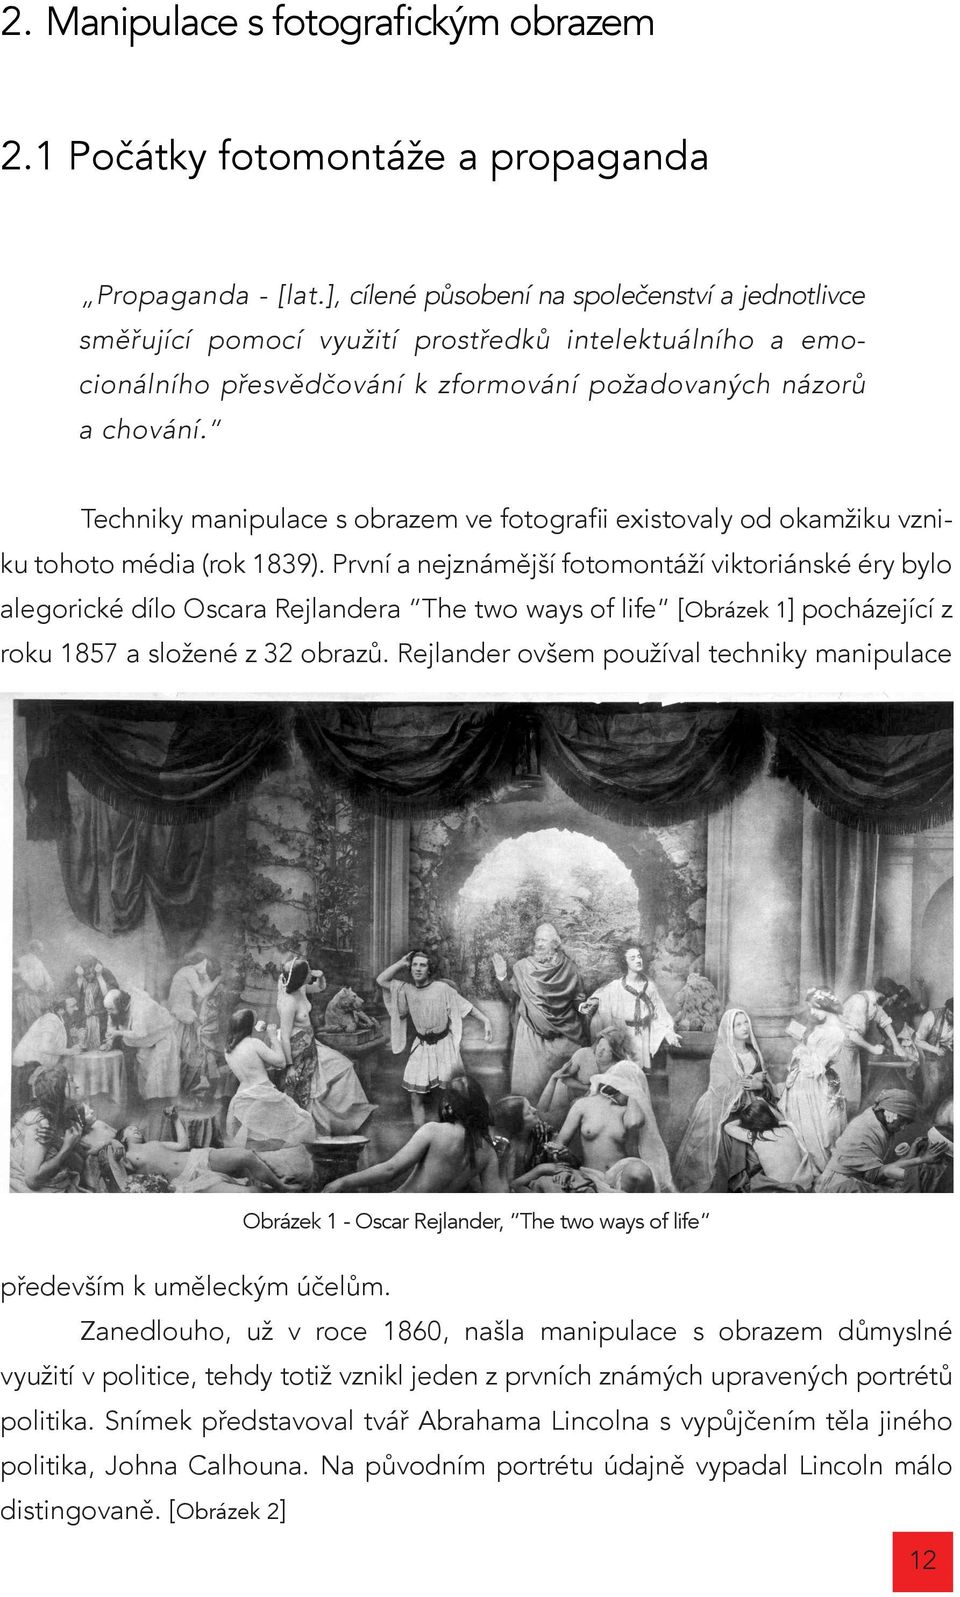 Techniky manipulace s obrazem ve fotografii existovaly od okamžiku vzniku tohoto média (rok 1839).